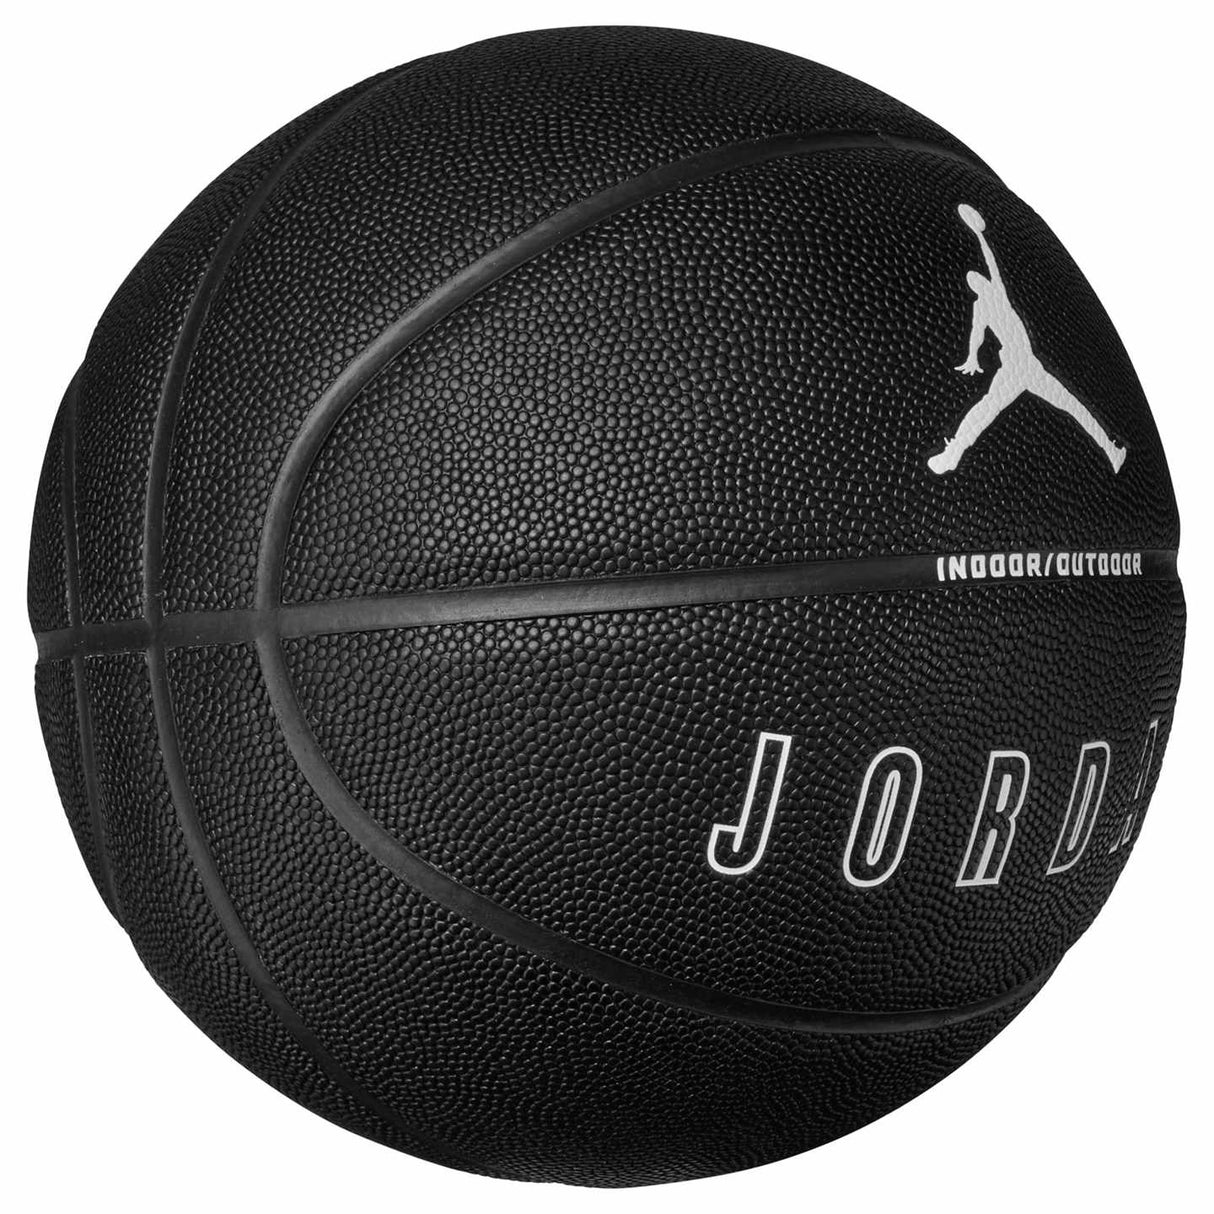 Jordan Ultimate 2.0 8P Graphic Basketball